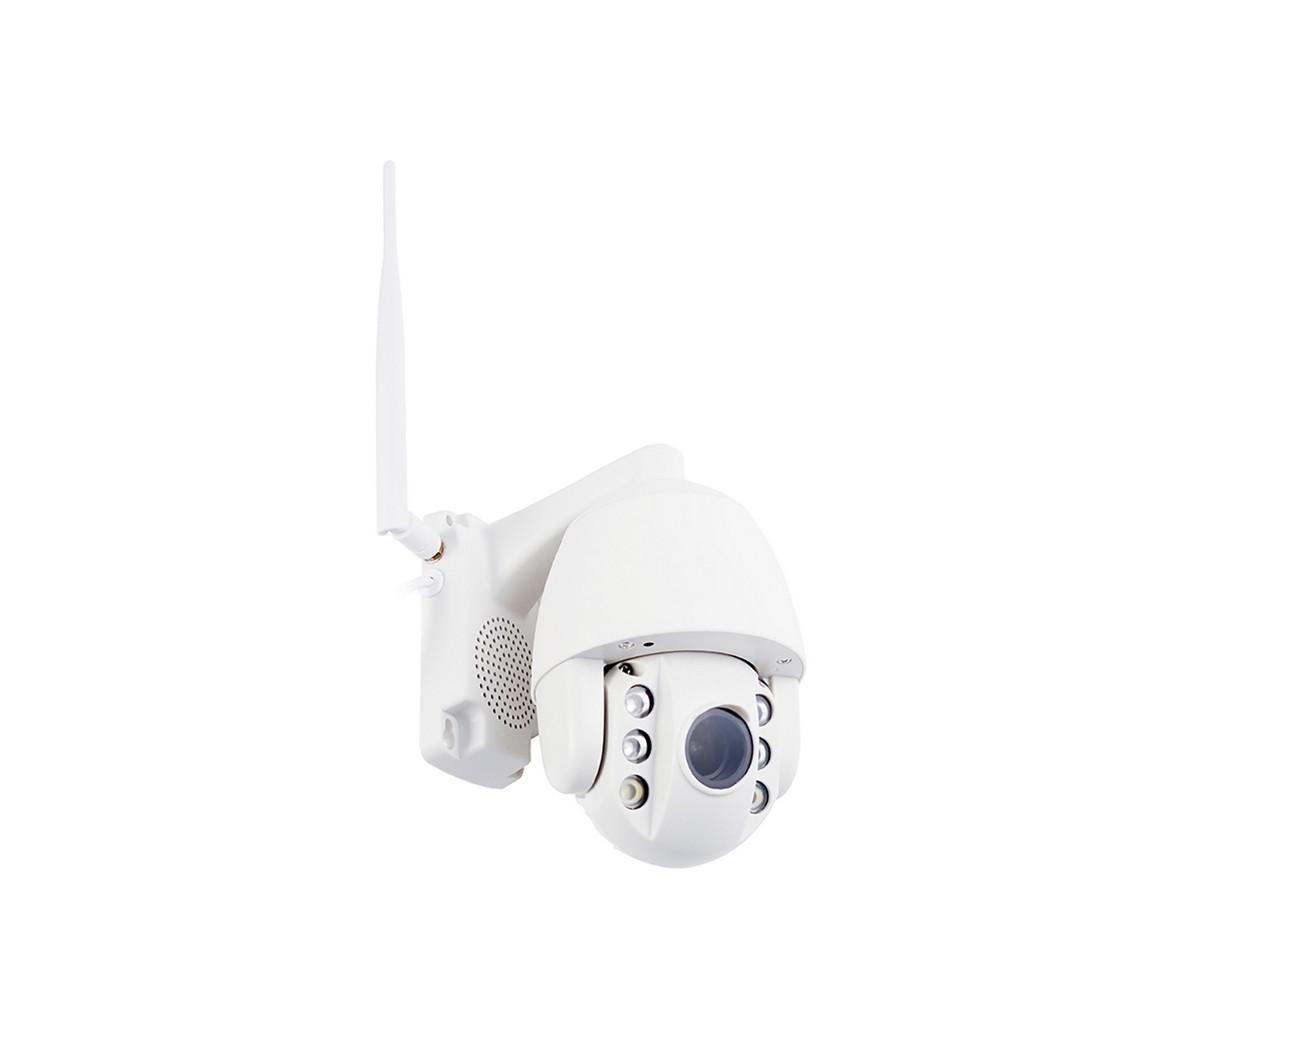 Камера уличная поворотная Wi-Fi IP Link SD09S-5X-8G 160921132 уличная ная проводная камера видеонаблюдения с 2х кратным zoom kdm 6215g 16092125